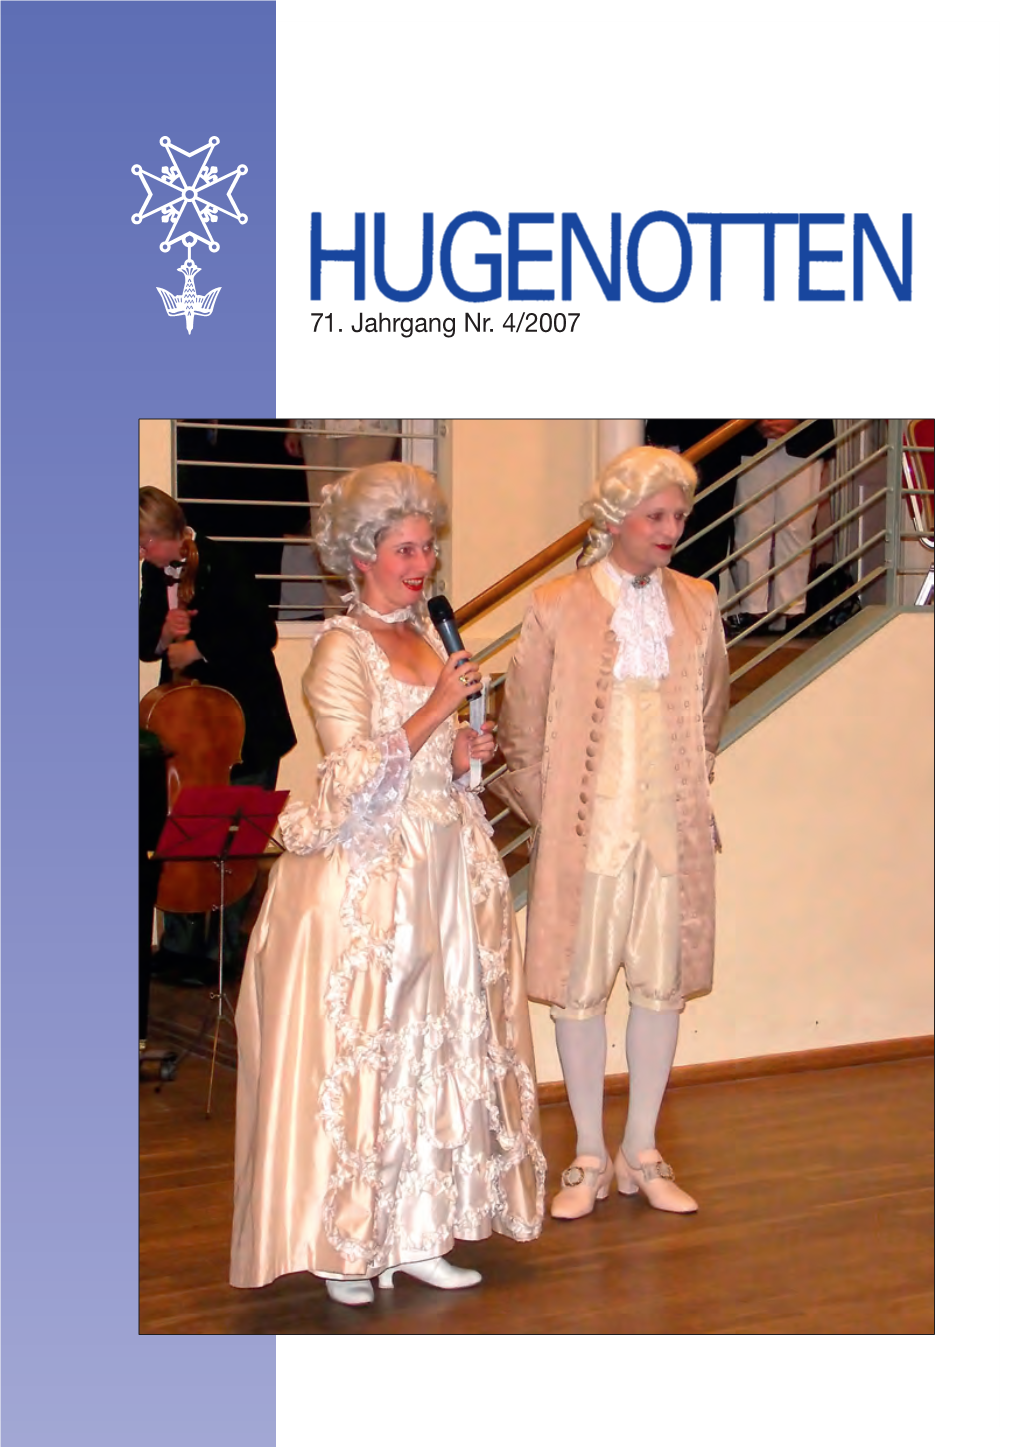 4/2007 Hugenotten 04 2007 16.08.2007 12:49 Uhr Seite 2